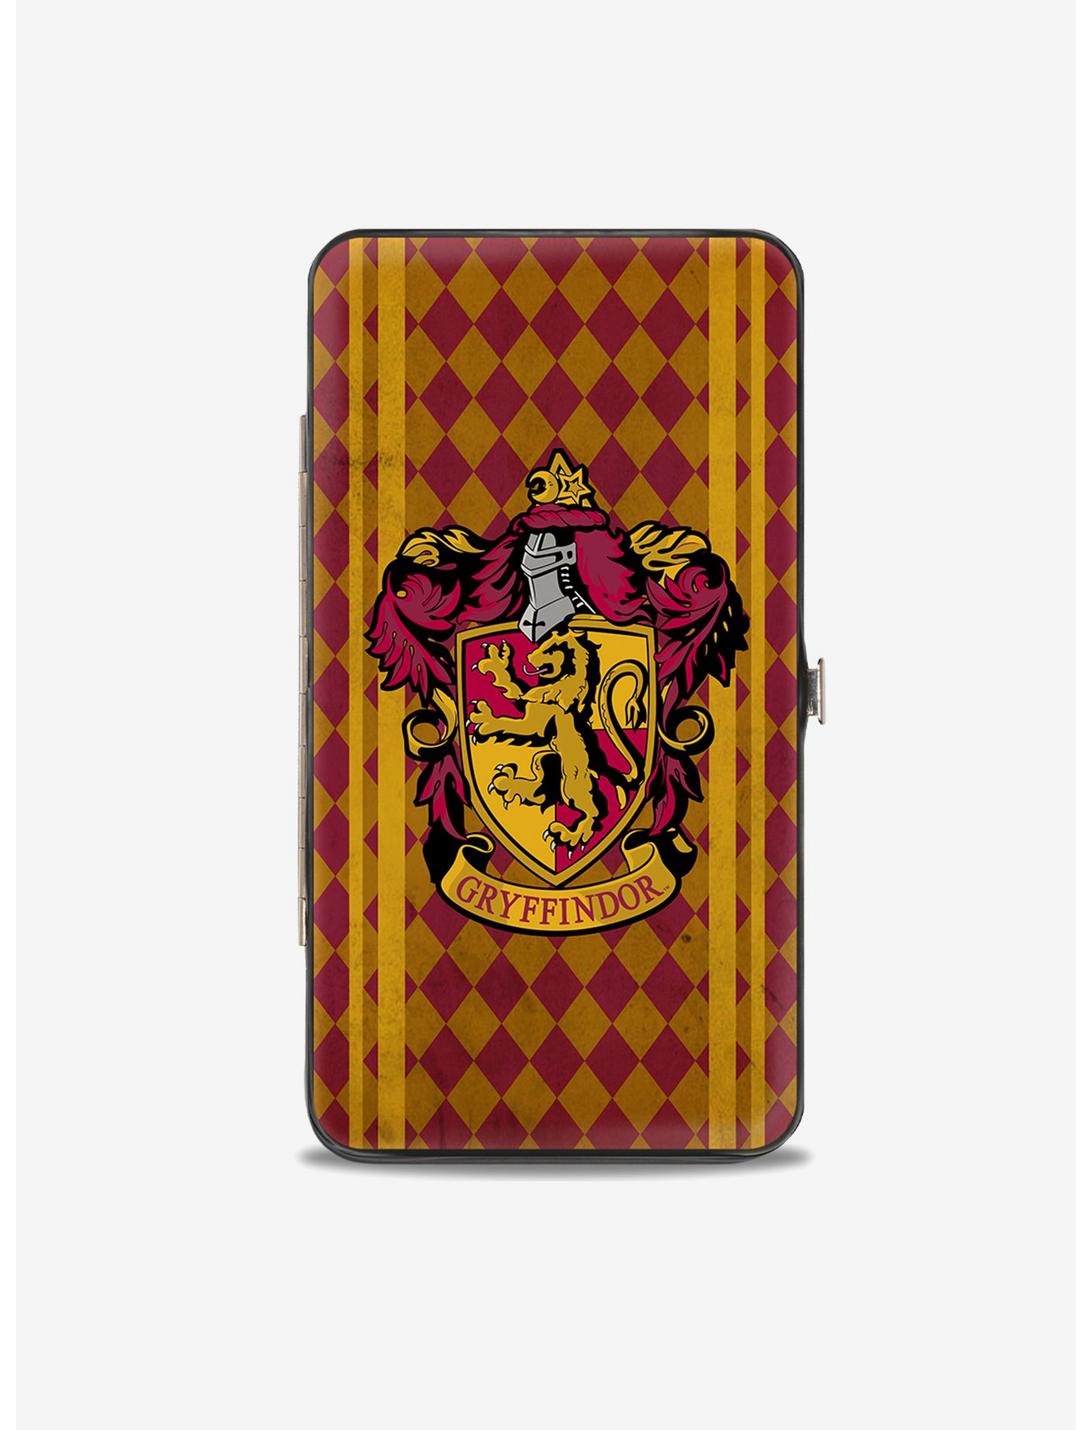 Harry Potter Gryffindor Crest Hinged Wallet, , hi-res